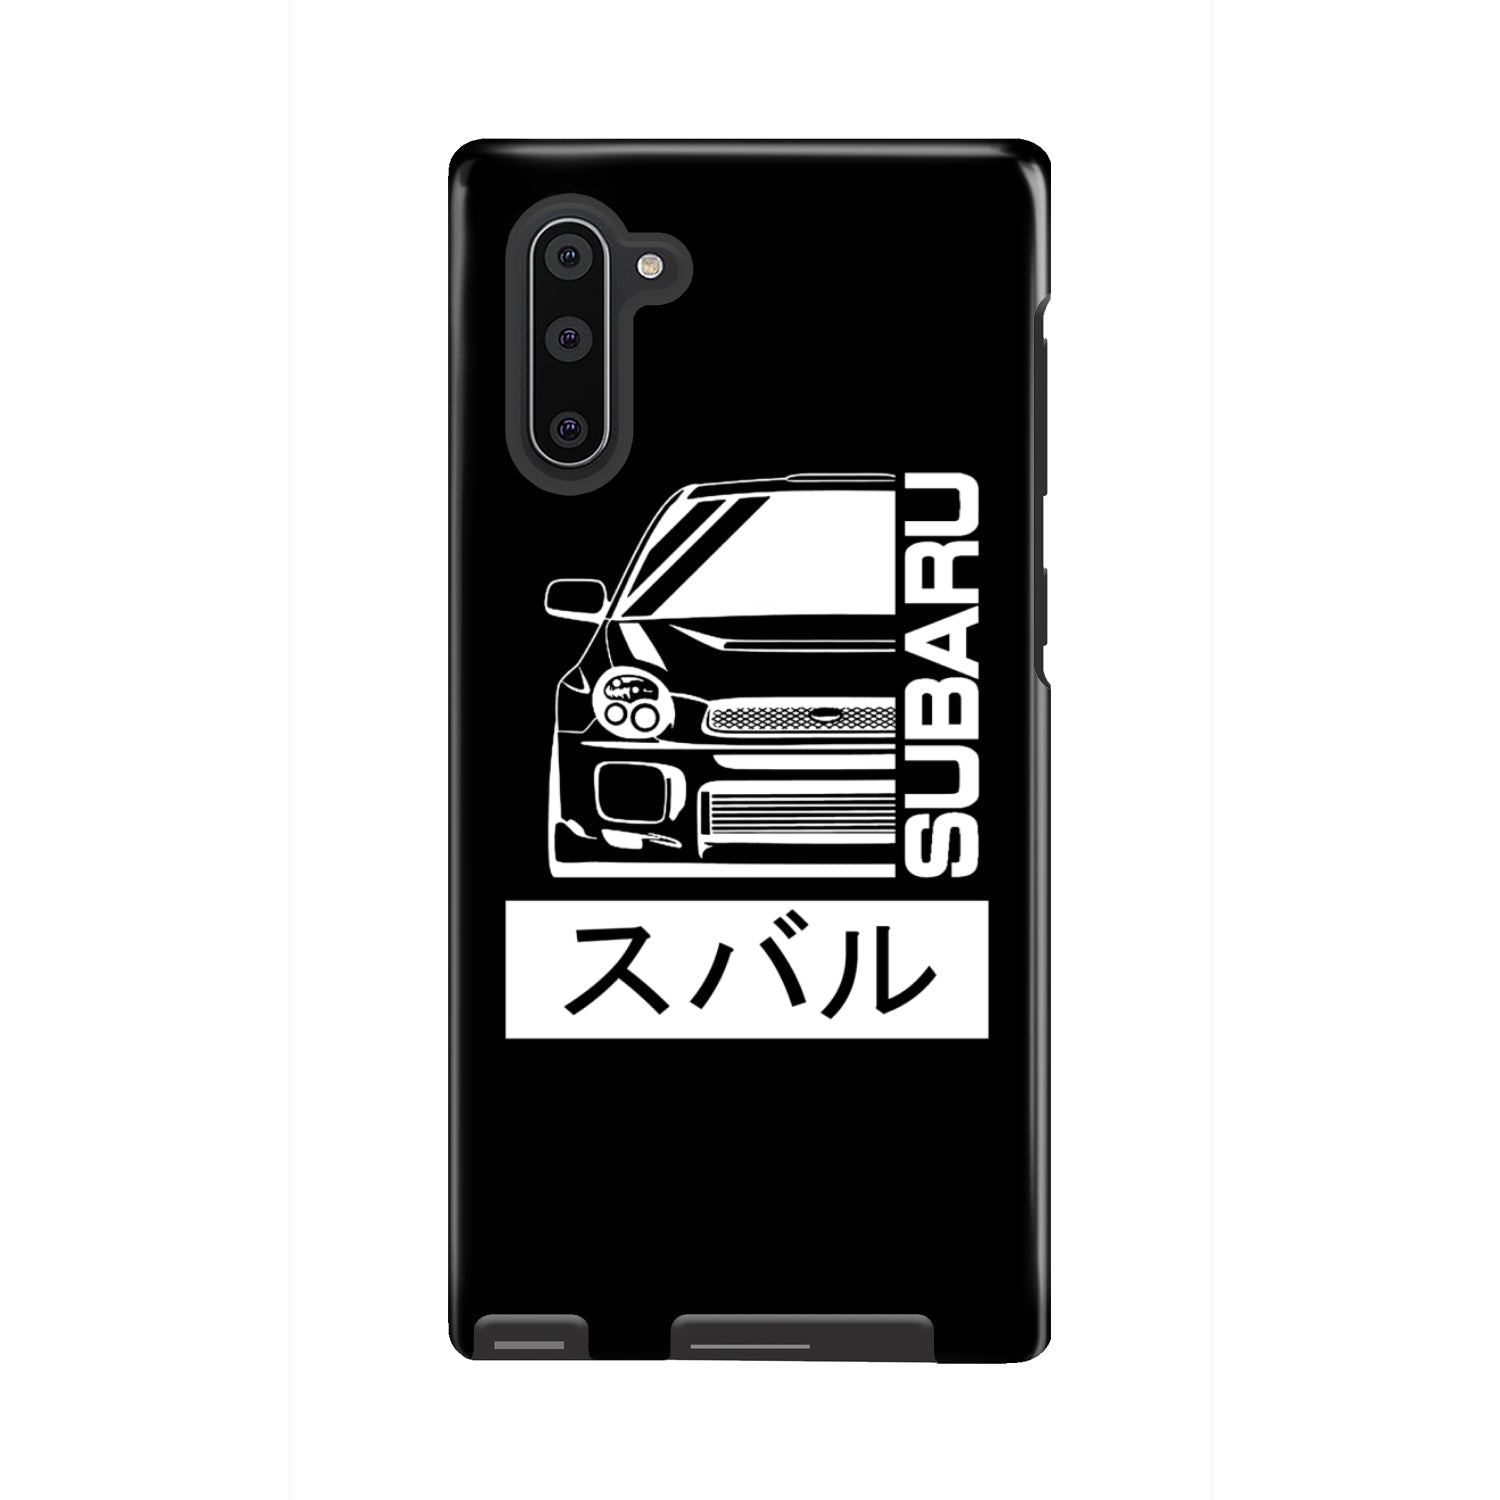 Subaru Gen 2 Phone Case